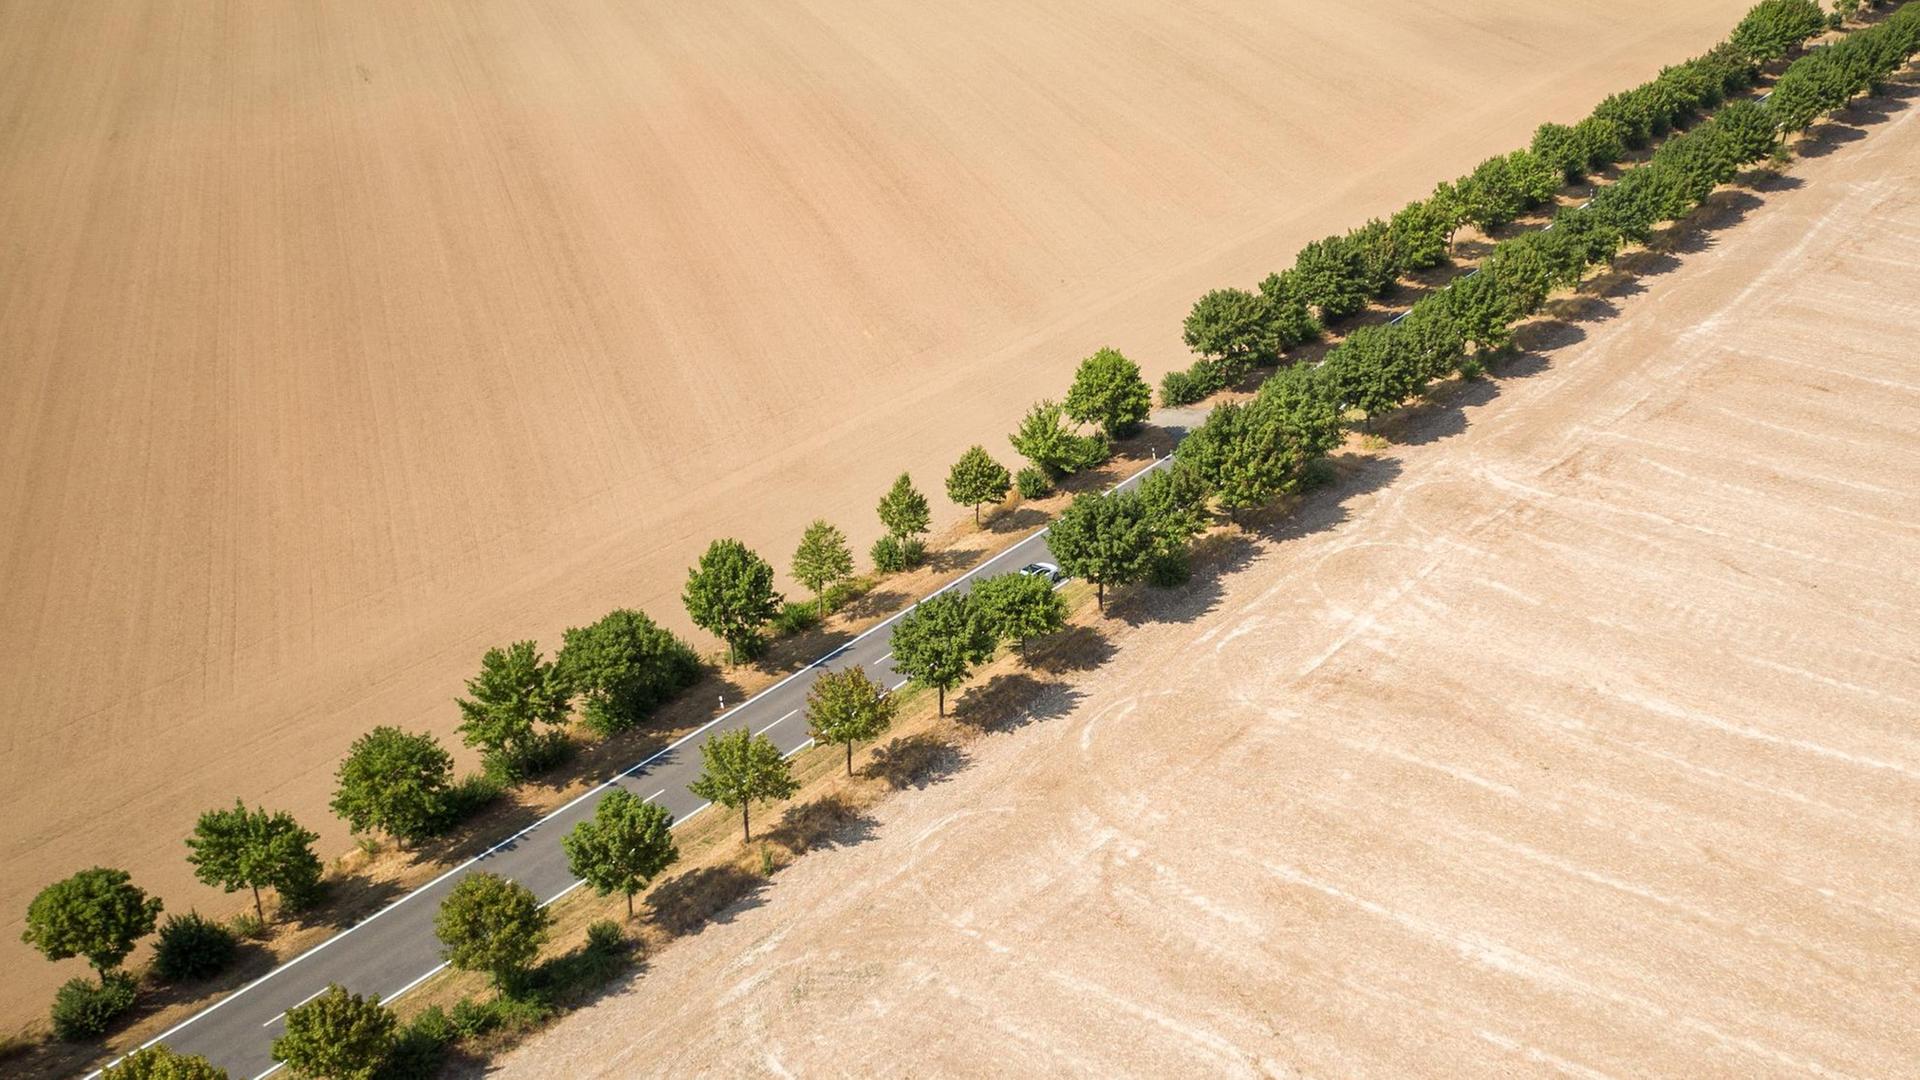 Alleebäume bilden den einzigen grünen Farbtupfer zwischen trockenen, abgeernteten Feldern (aufgenommen mit einer Drohne).